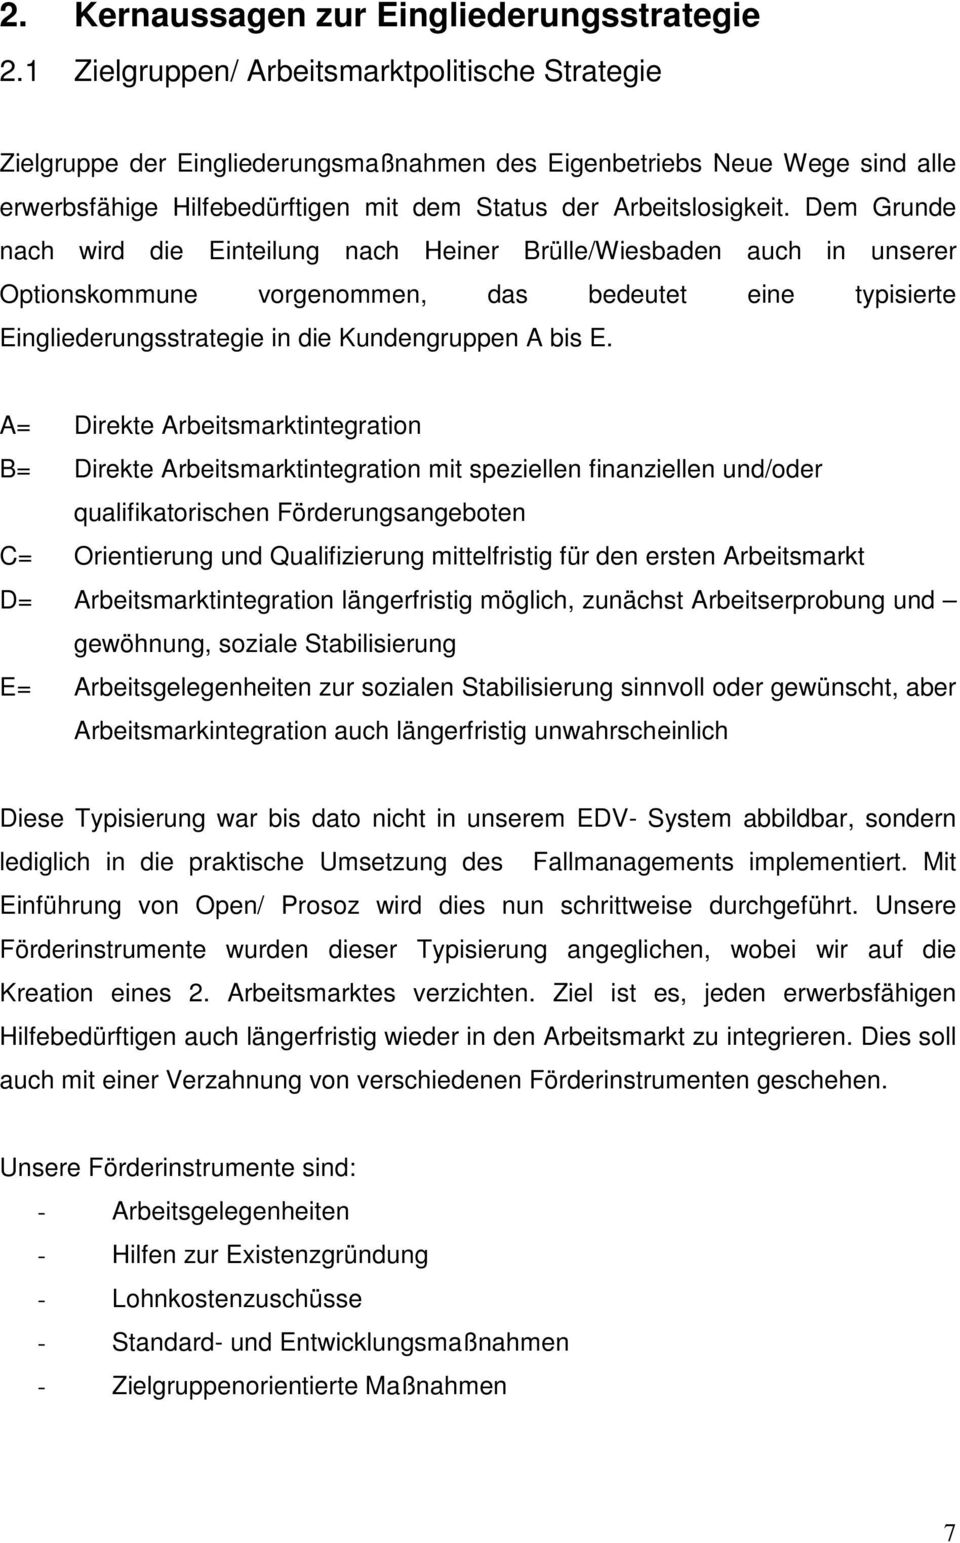 Dem Grunde nach wird die Einteilung nach Heiner Brülle/Wiesbaden auch in unserer Optionskommune vorgenommen, das bedeutet eine typisierte Eingliederungsstrategie in die Kundengruppen A bis E.